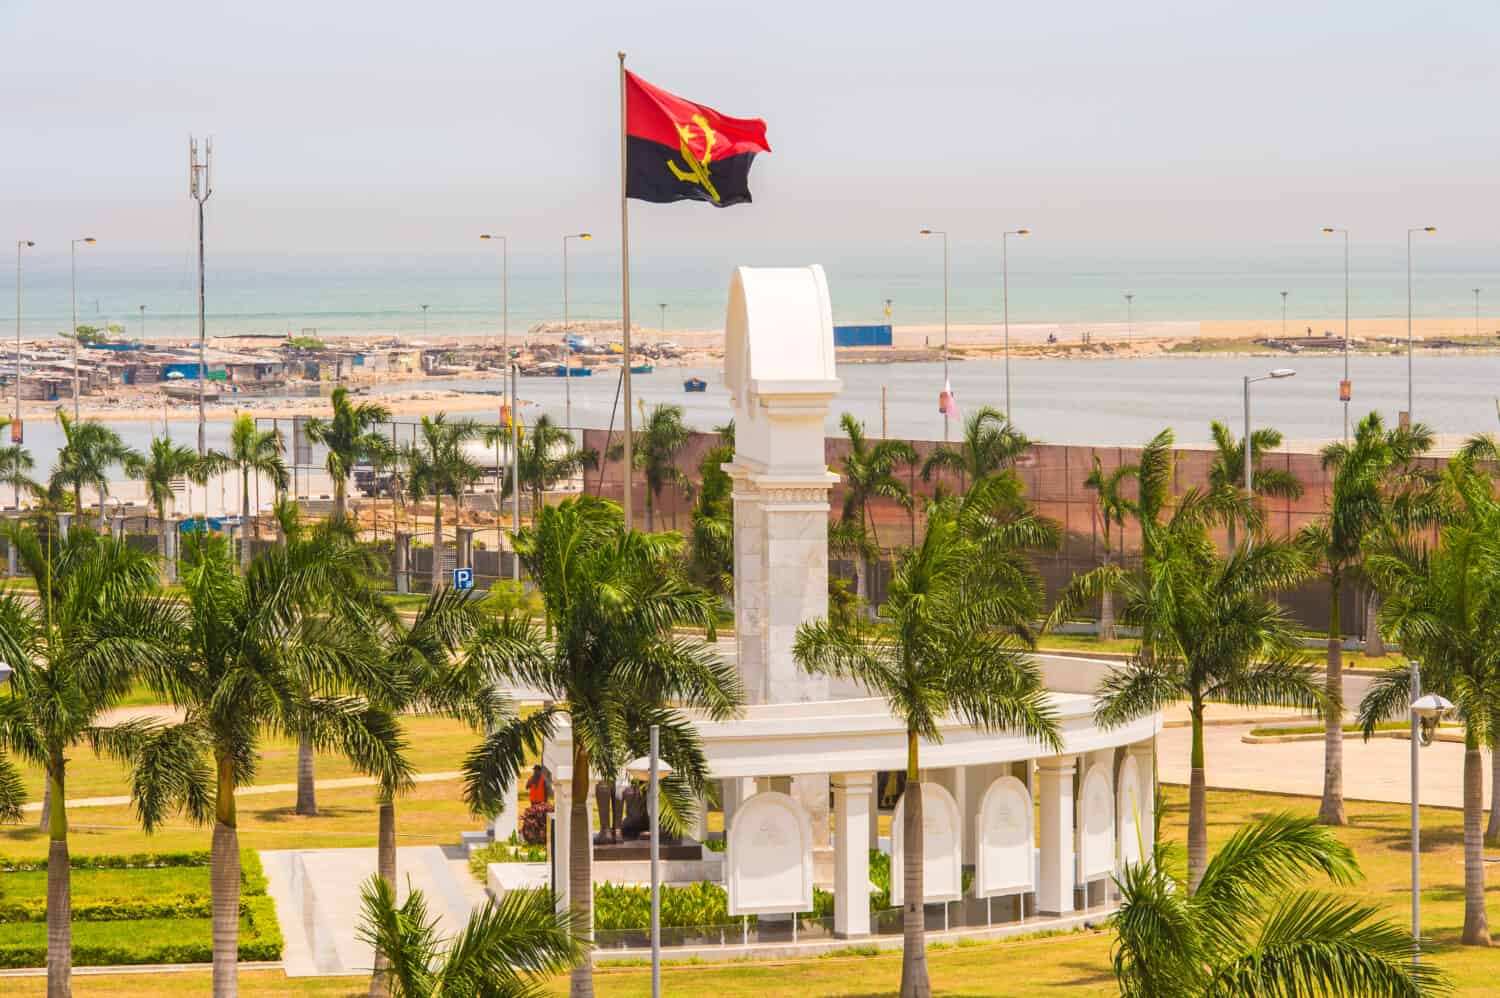 Important monument in Luanda, Angola, Africa